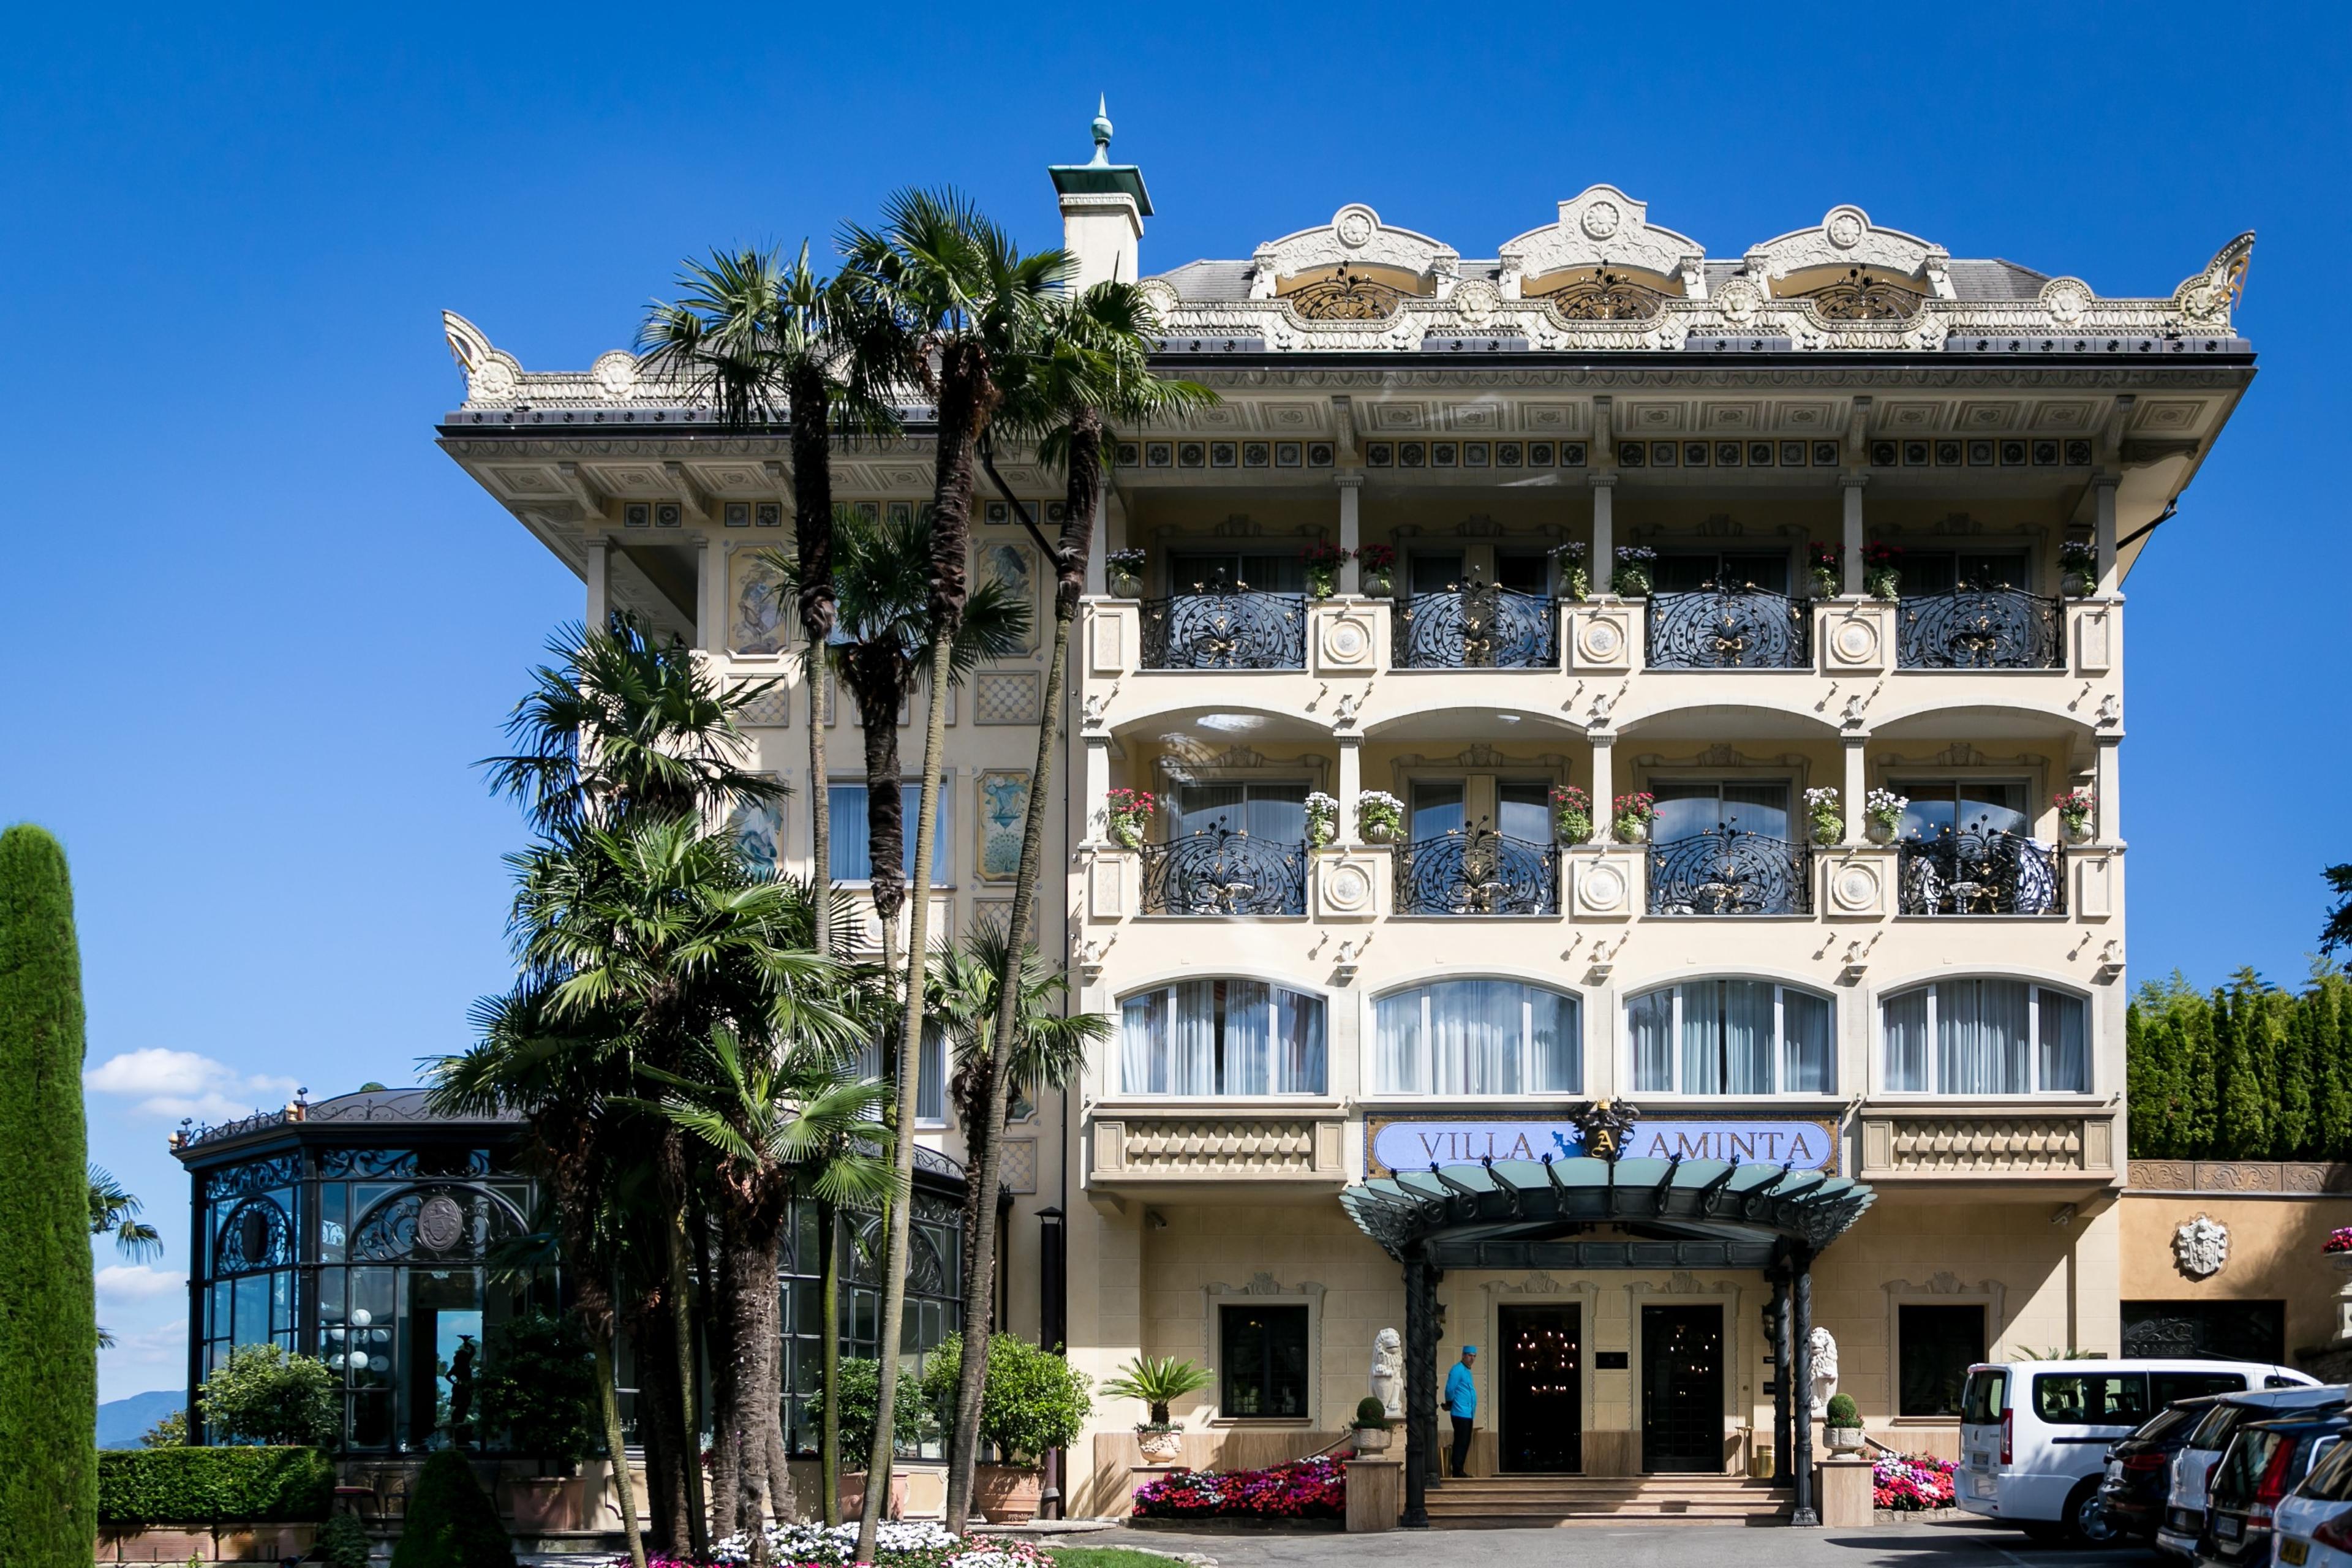 Hotel Villa e Palazzo Aminta - Stresa, Italy